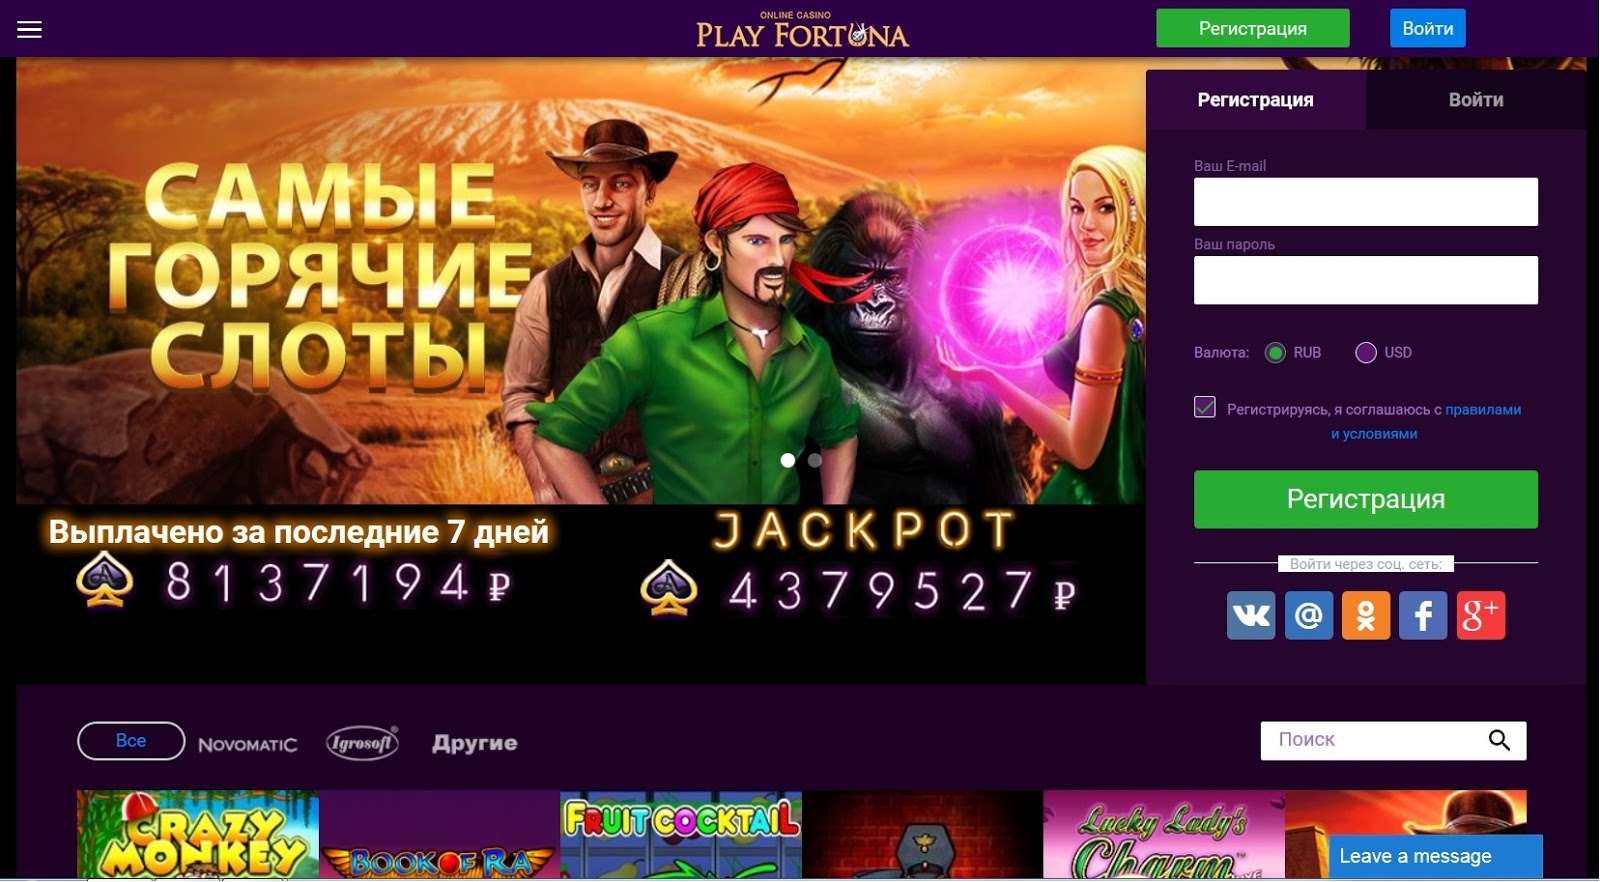 Play fortuna casino казино плей фортуна играть онлайн не работает казино вулкан ставка slots dengi online